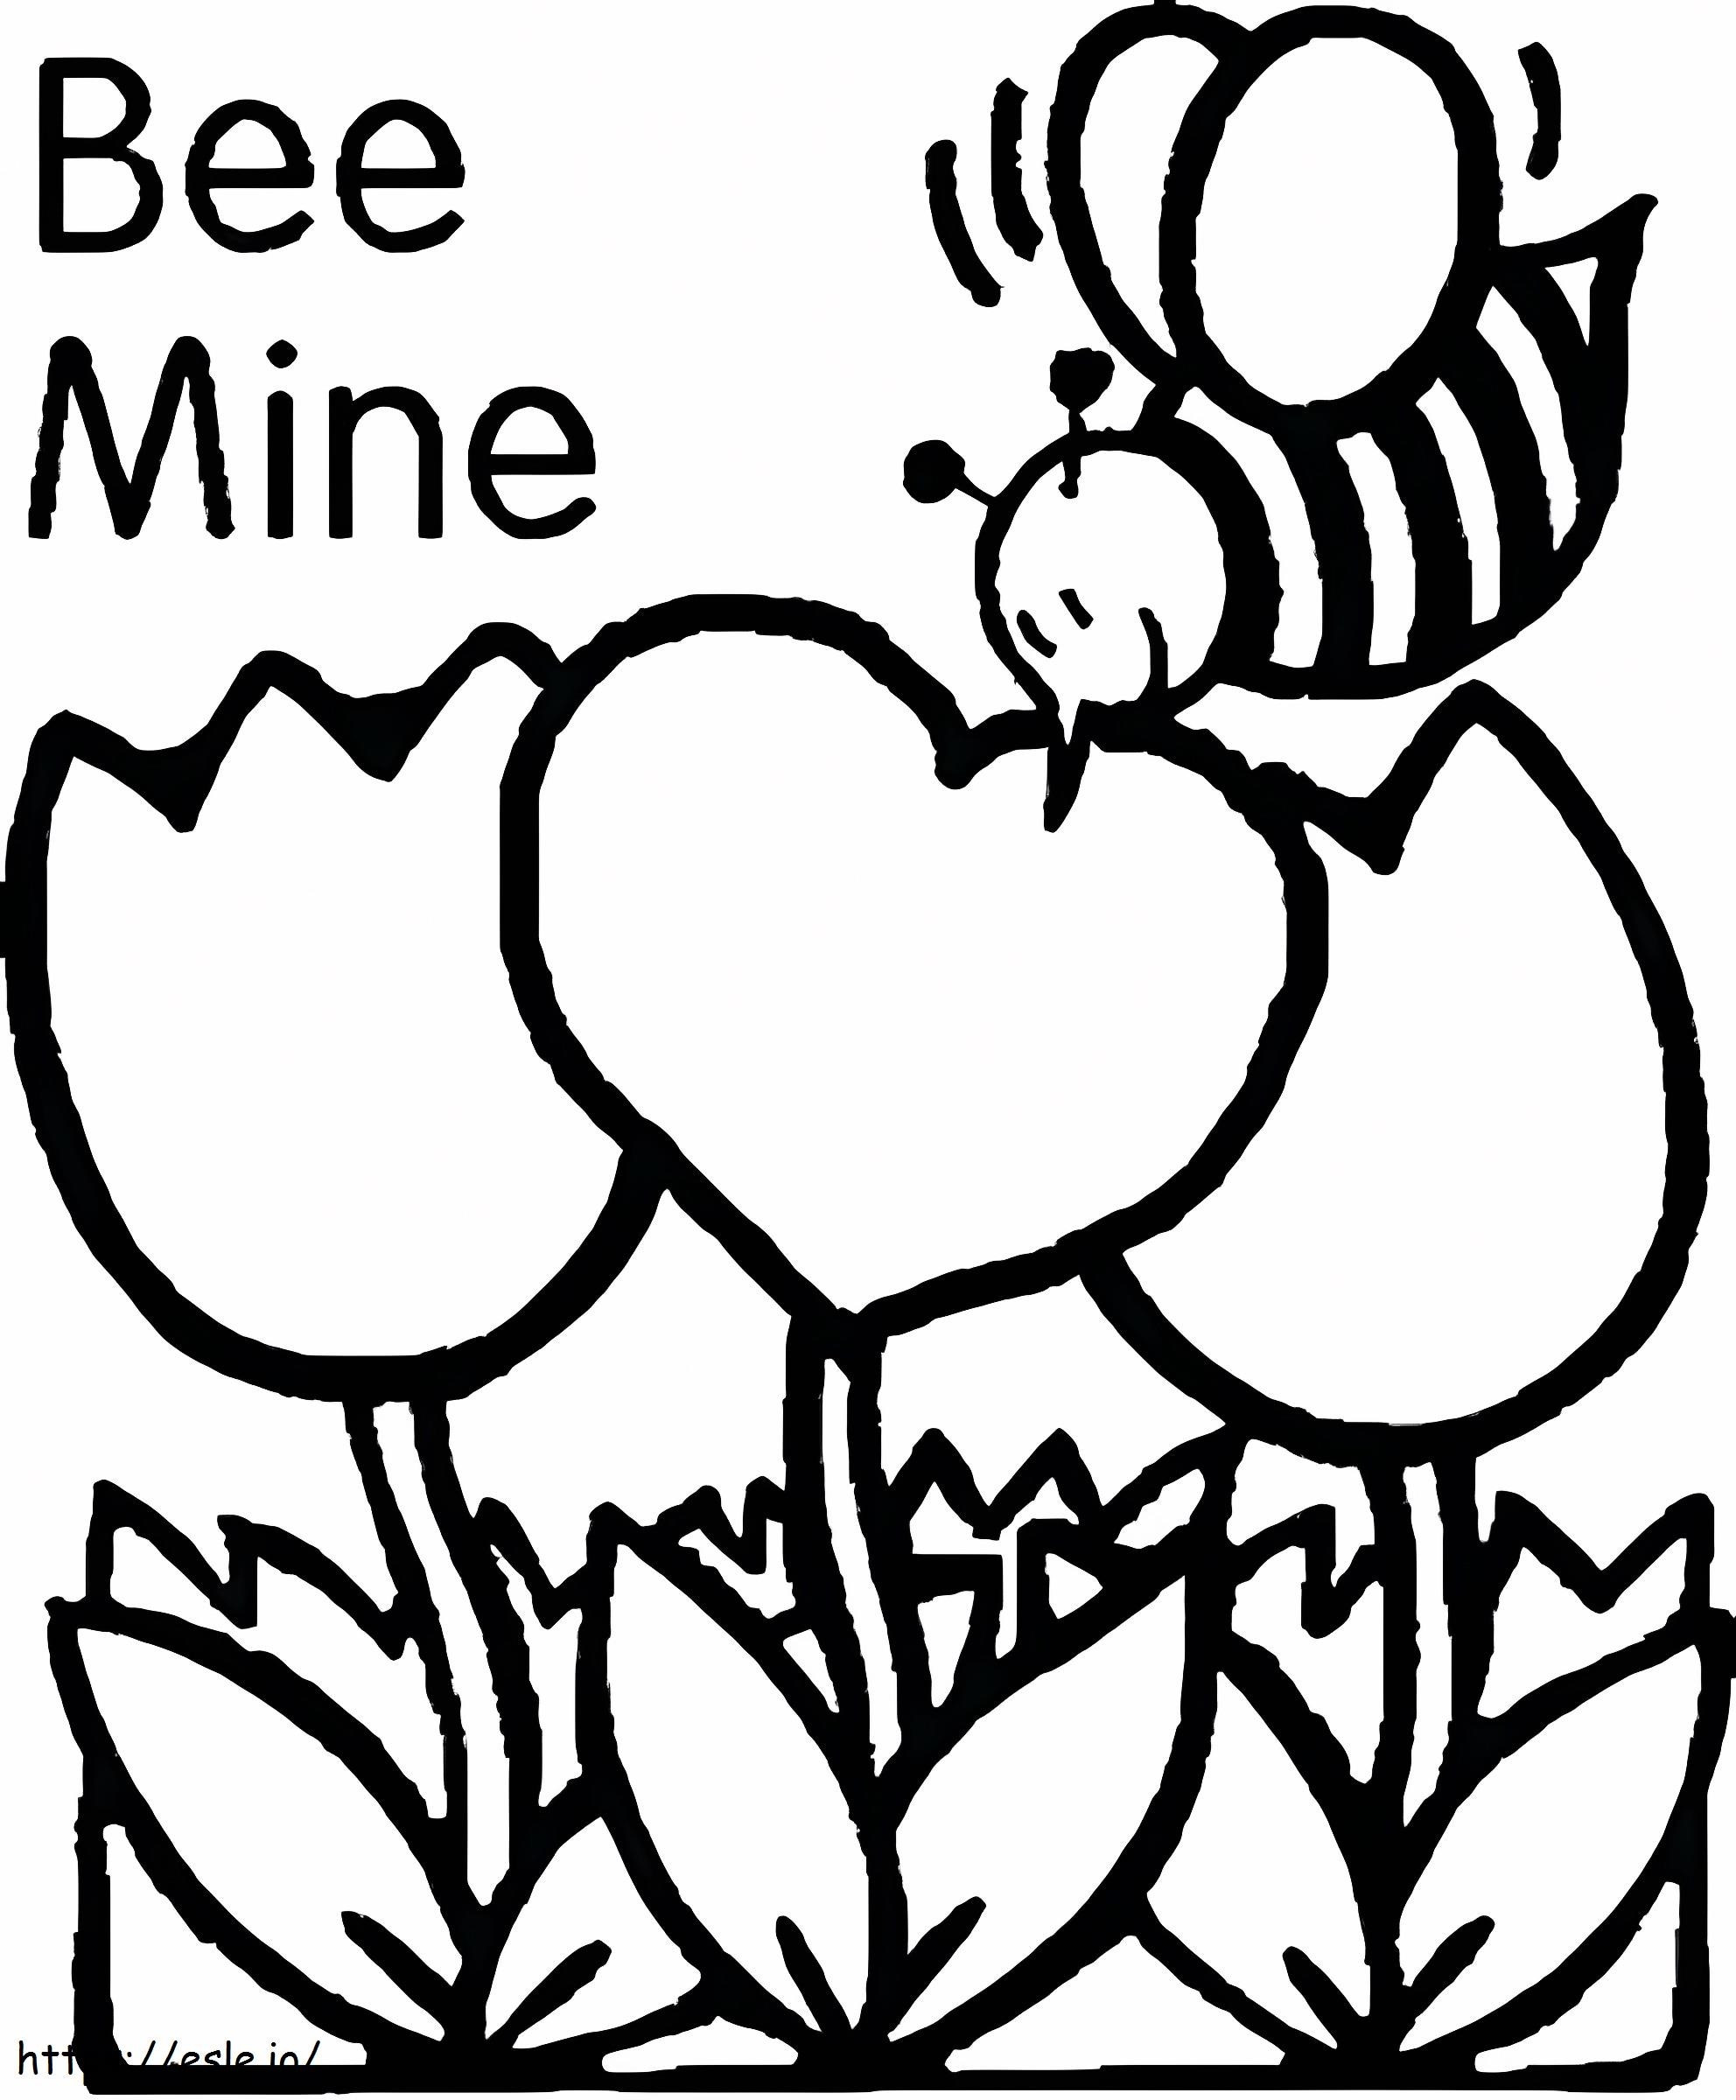 Biglietto di San Valentino con la miniera delle api da colorare